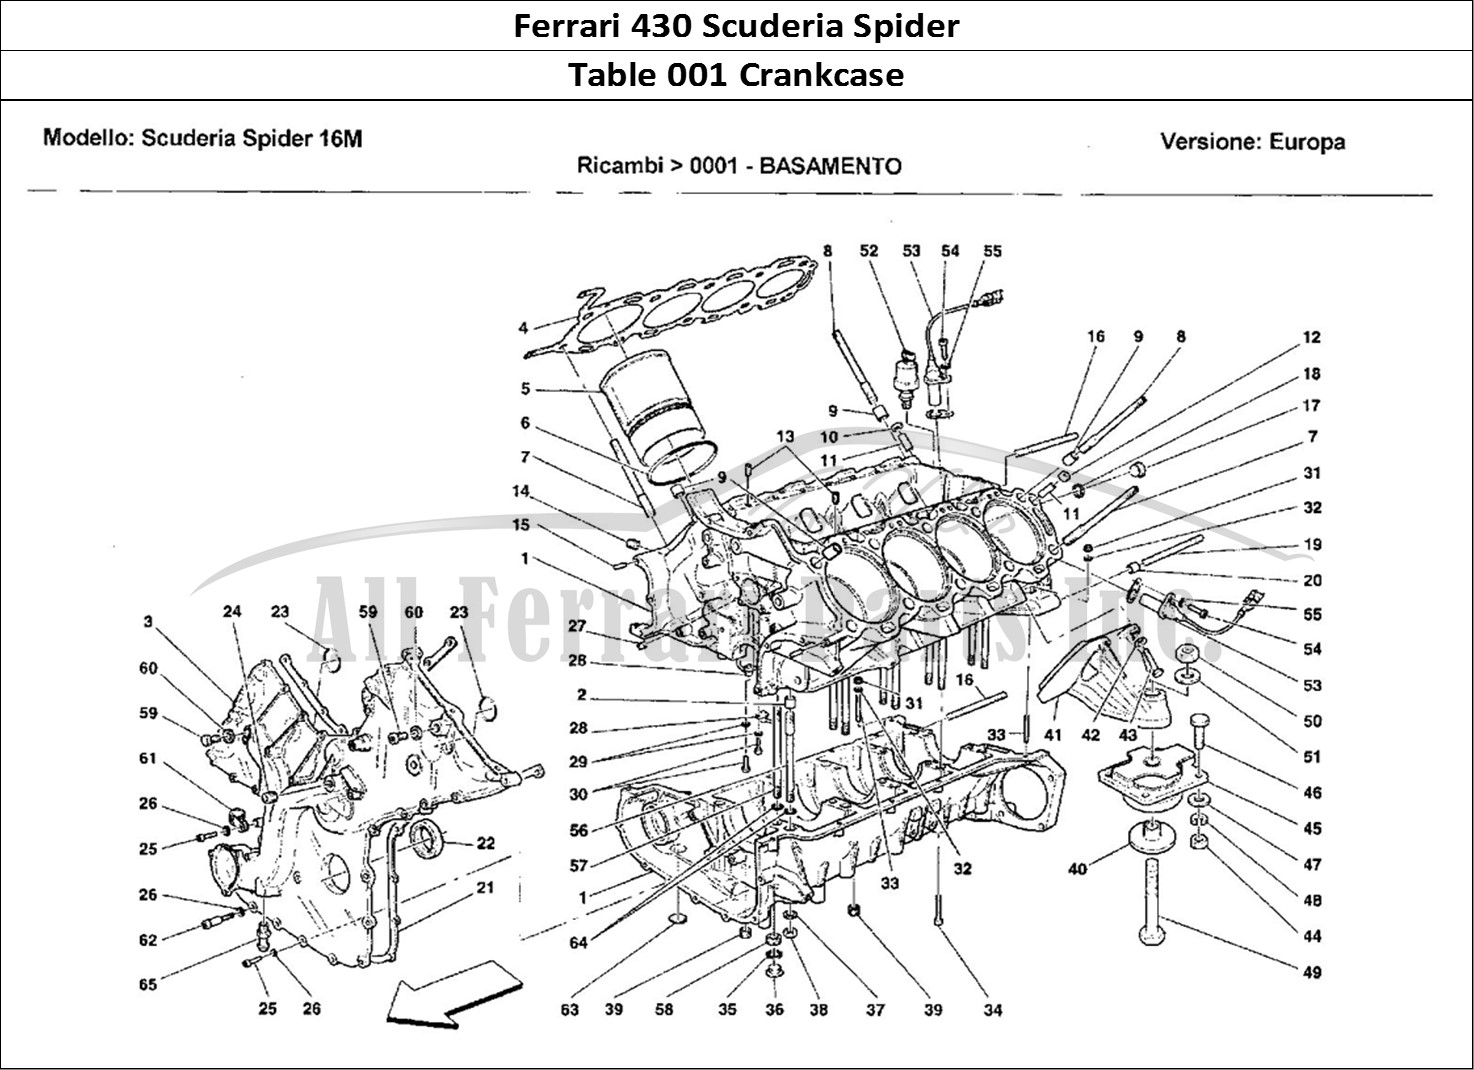 Ferrari Parts Ferrari 430 Scuderia Spider 16M Page 001 Basamento